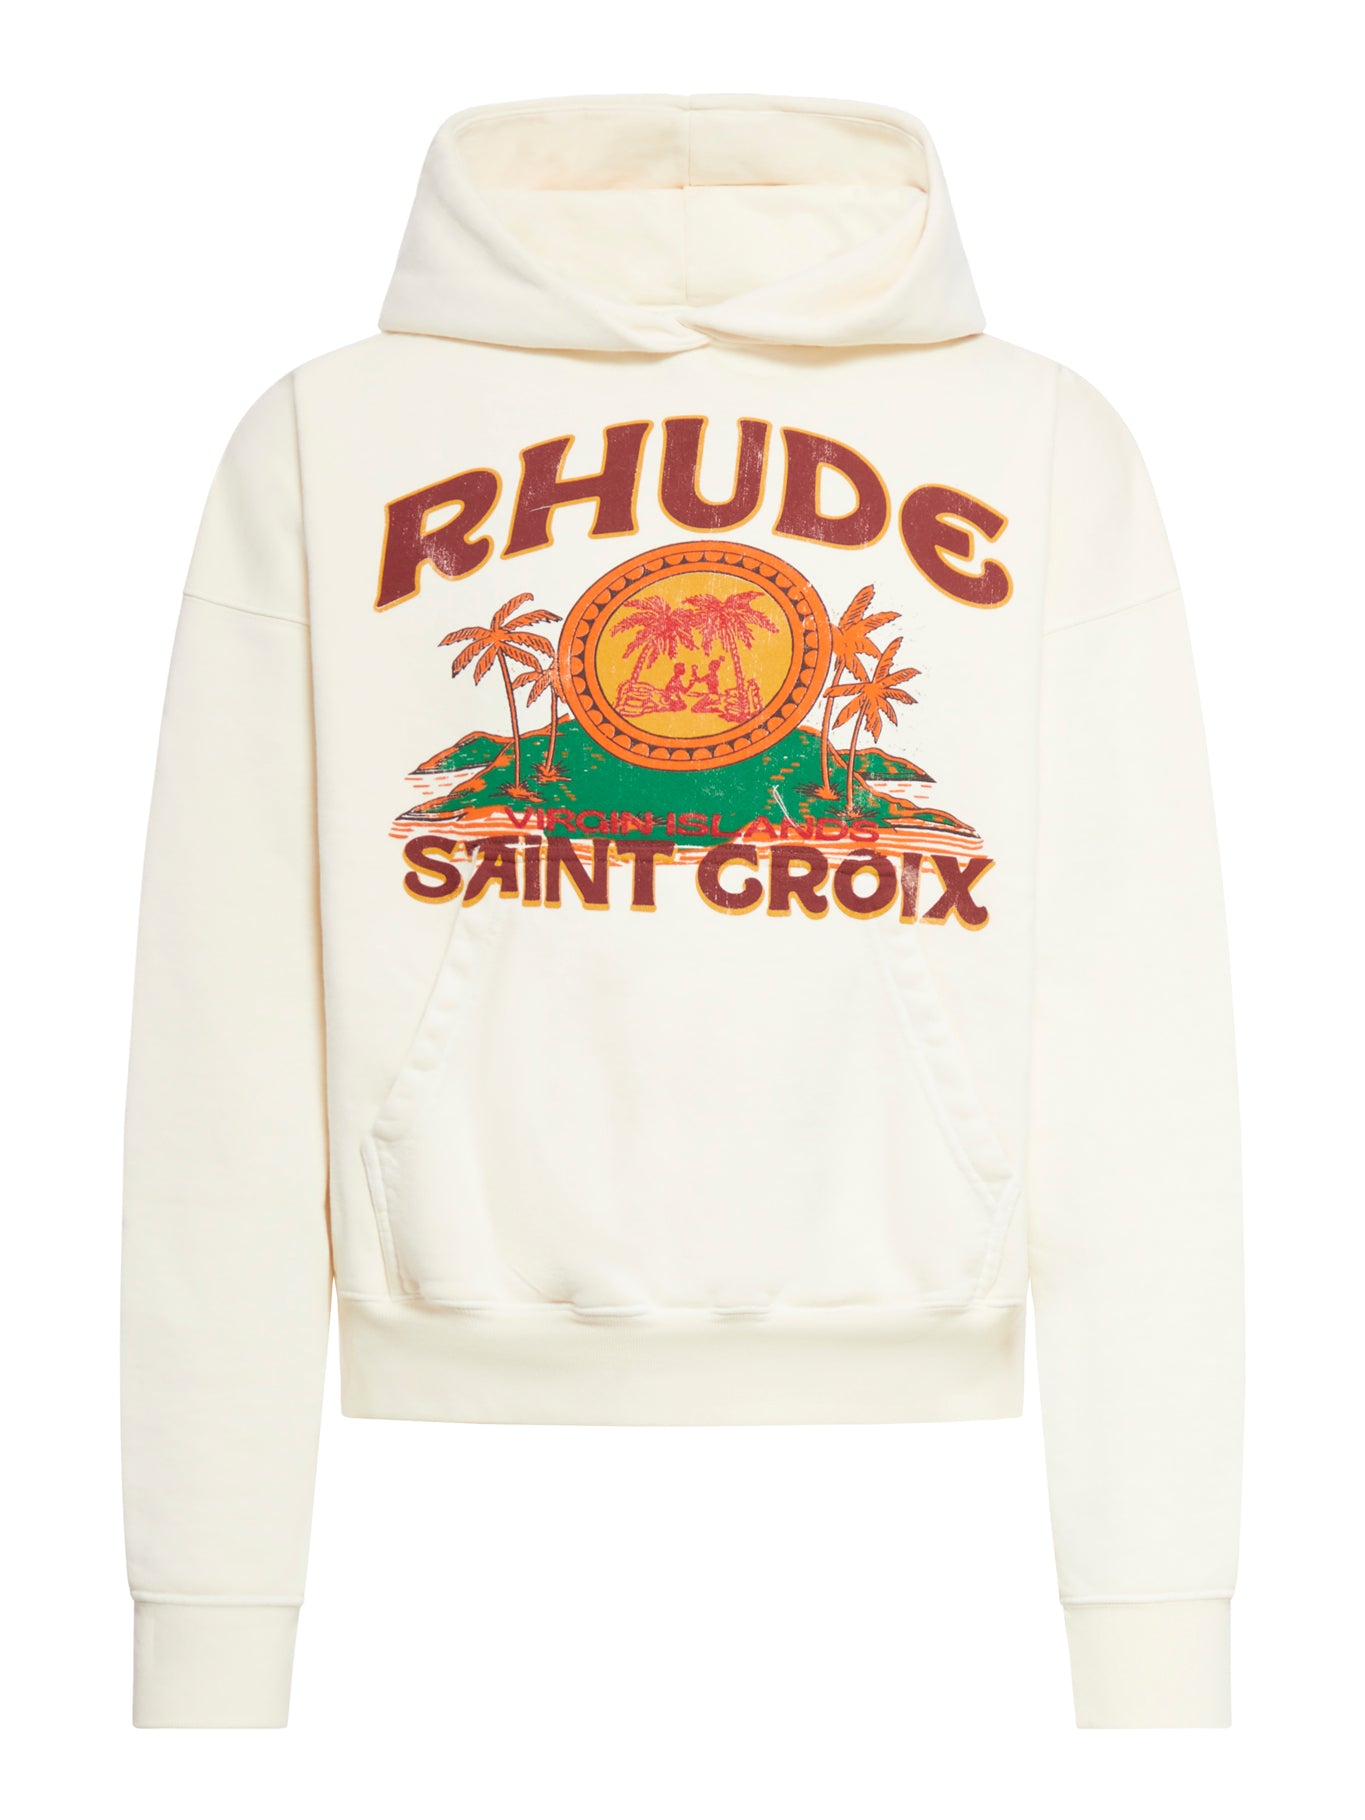 RHUDE ST. CROIX HOODIE